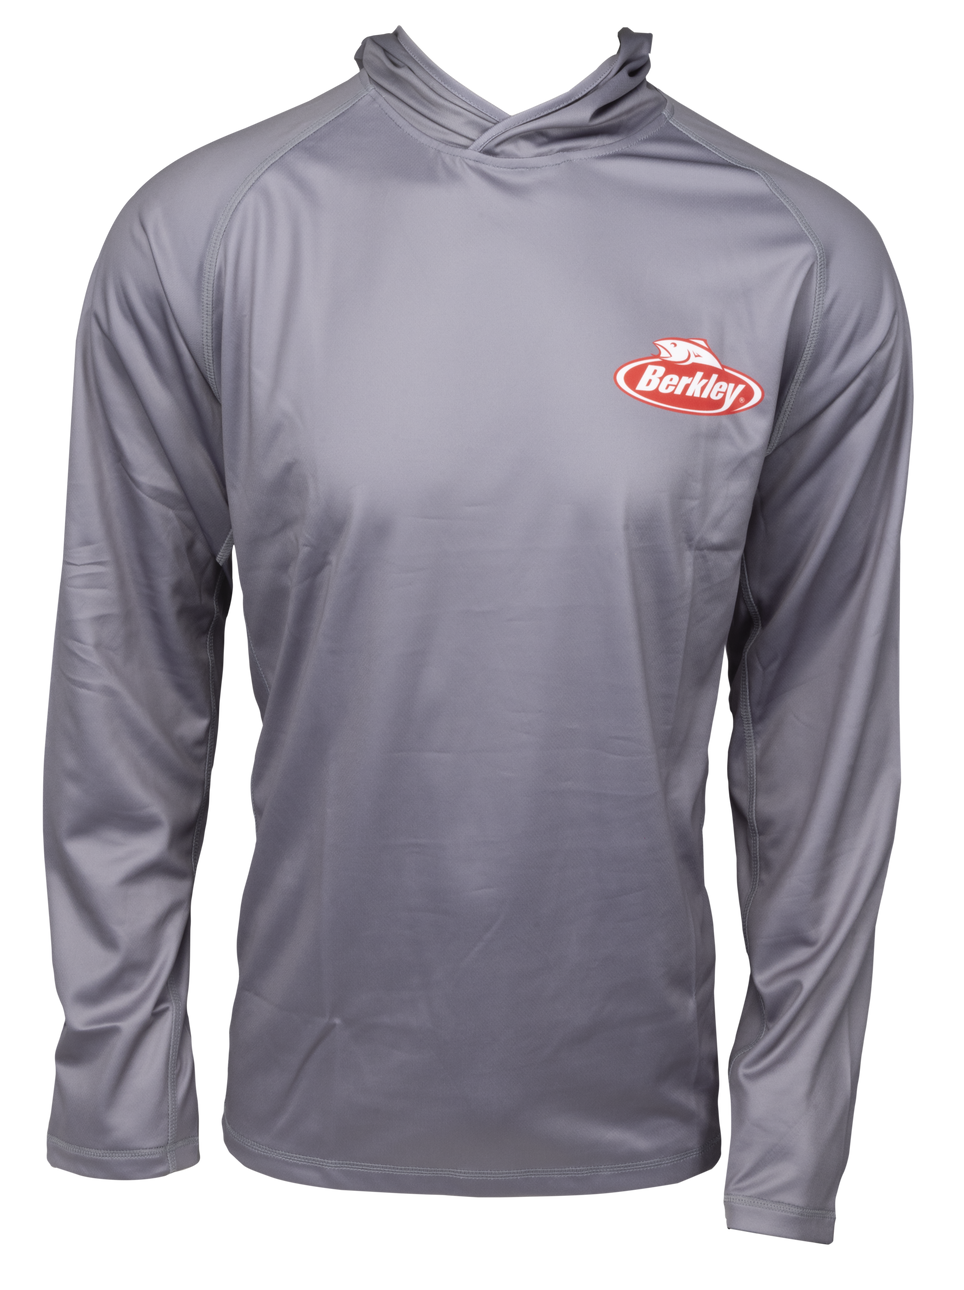 Berkley Grey Vented Fishing Shirt Grey